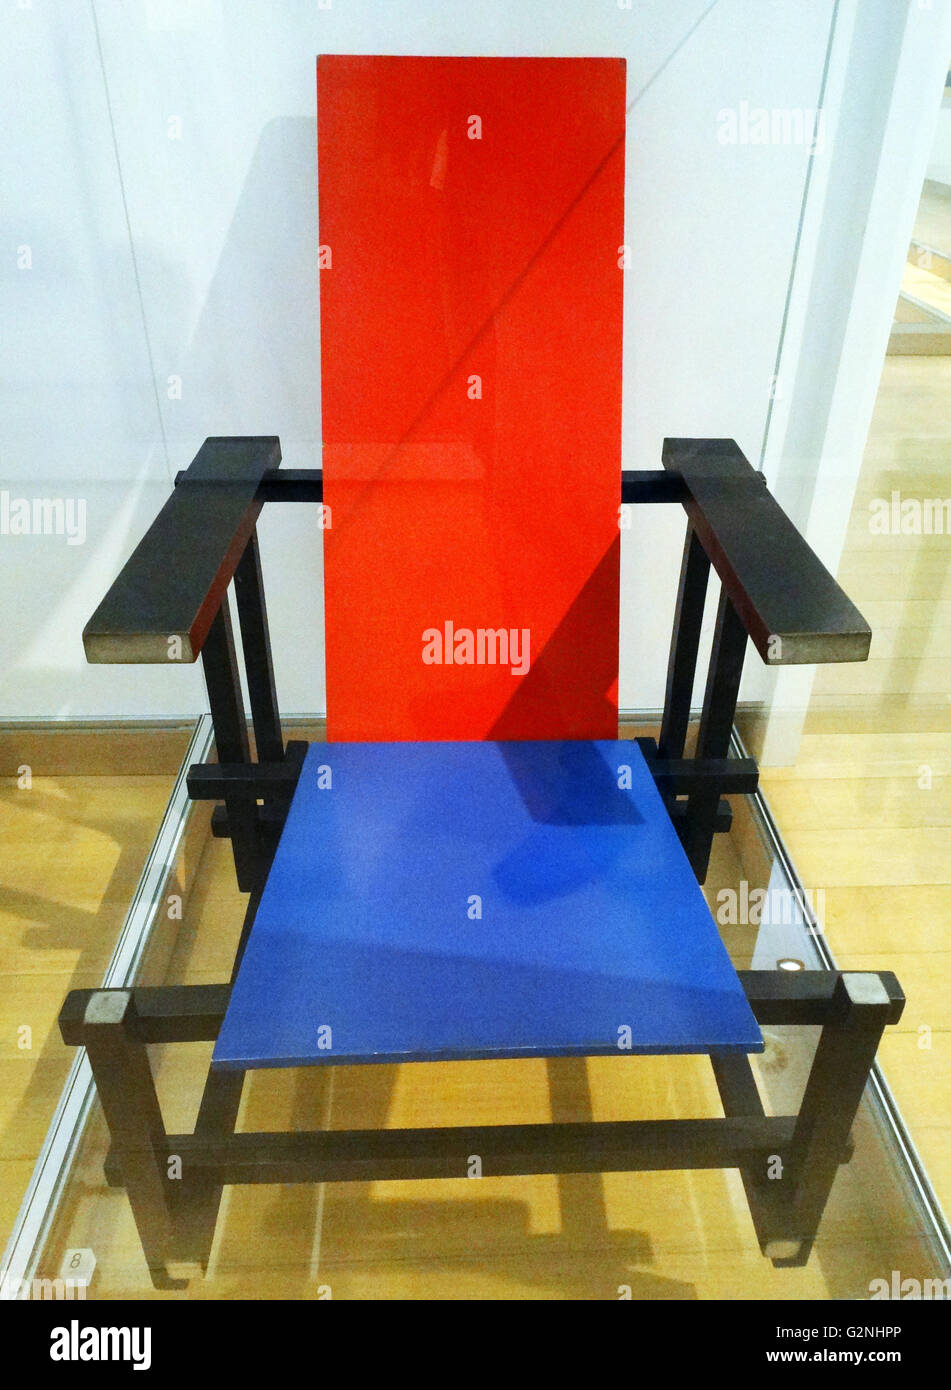 Chaise rouge et bleue de Gerrit Rietveld (1888-1965), conçu 1919-1923,  celui-ci fait c 1925. Mobilier de designer et architecte néerlandais.  Contreplaqué, essence : bouleau et hêtre peint Photo Stock - Alamy